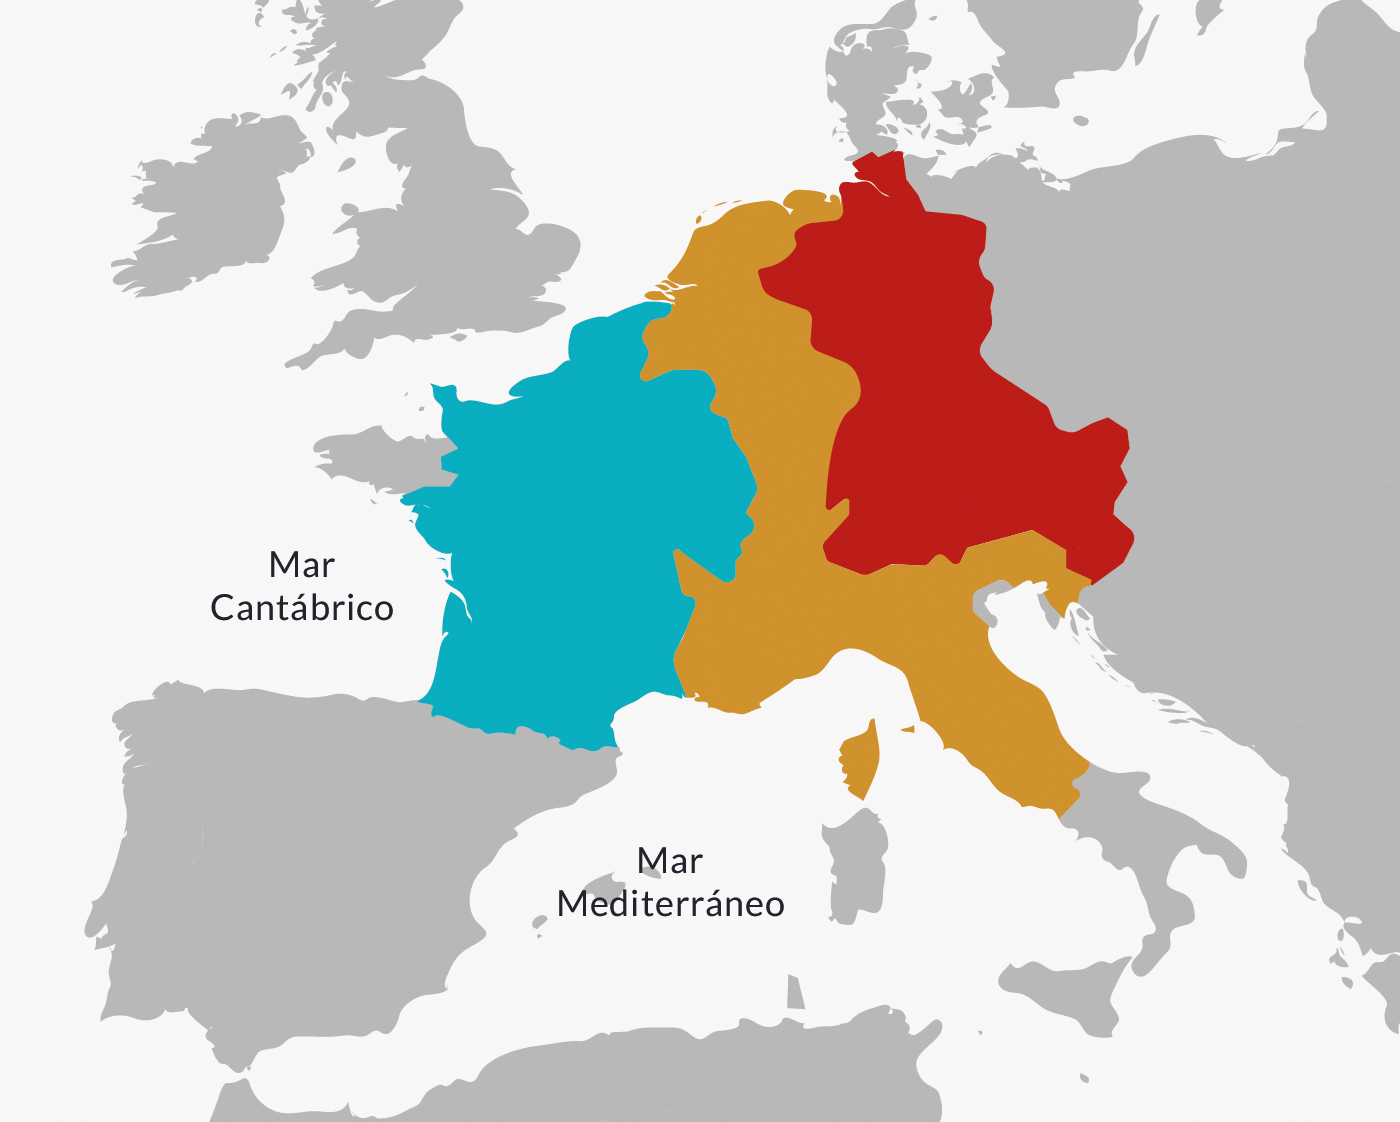 Partición del territorio del Imperio carolingio, según los términos del Tratado de Verdún (843).